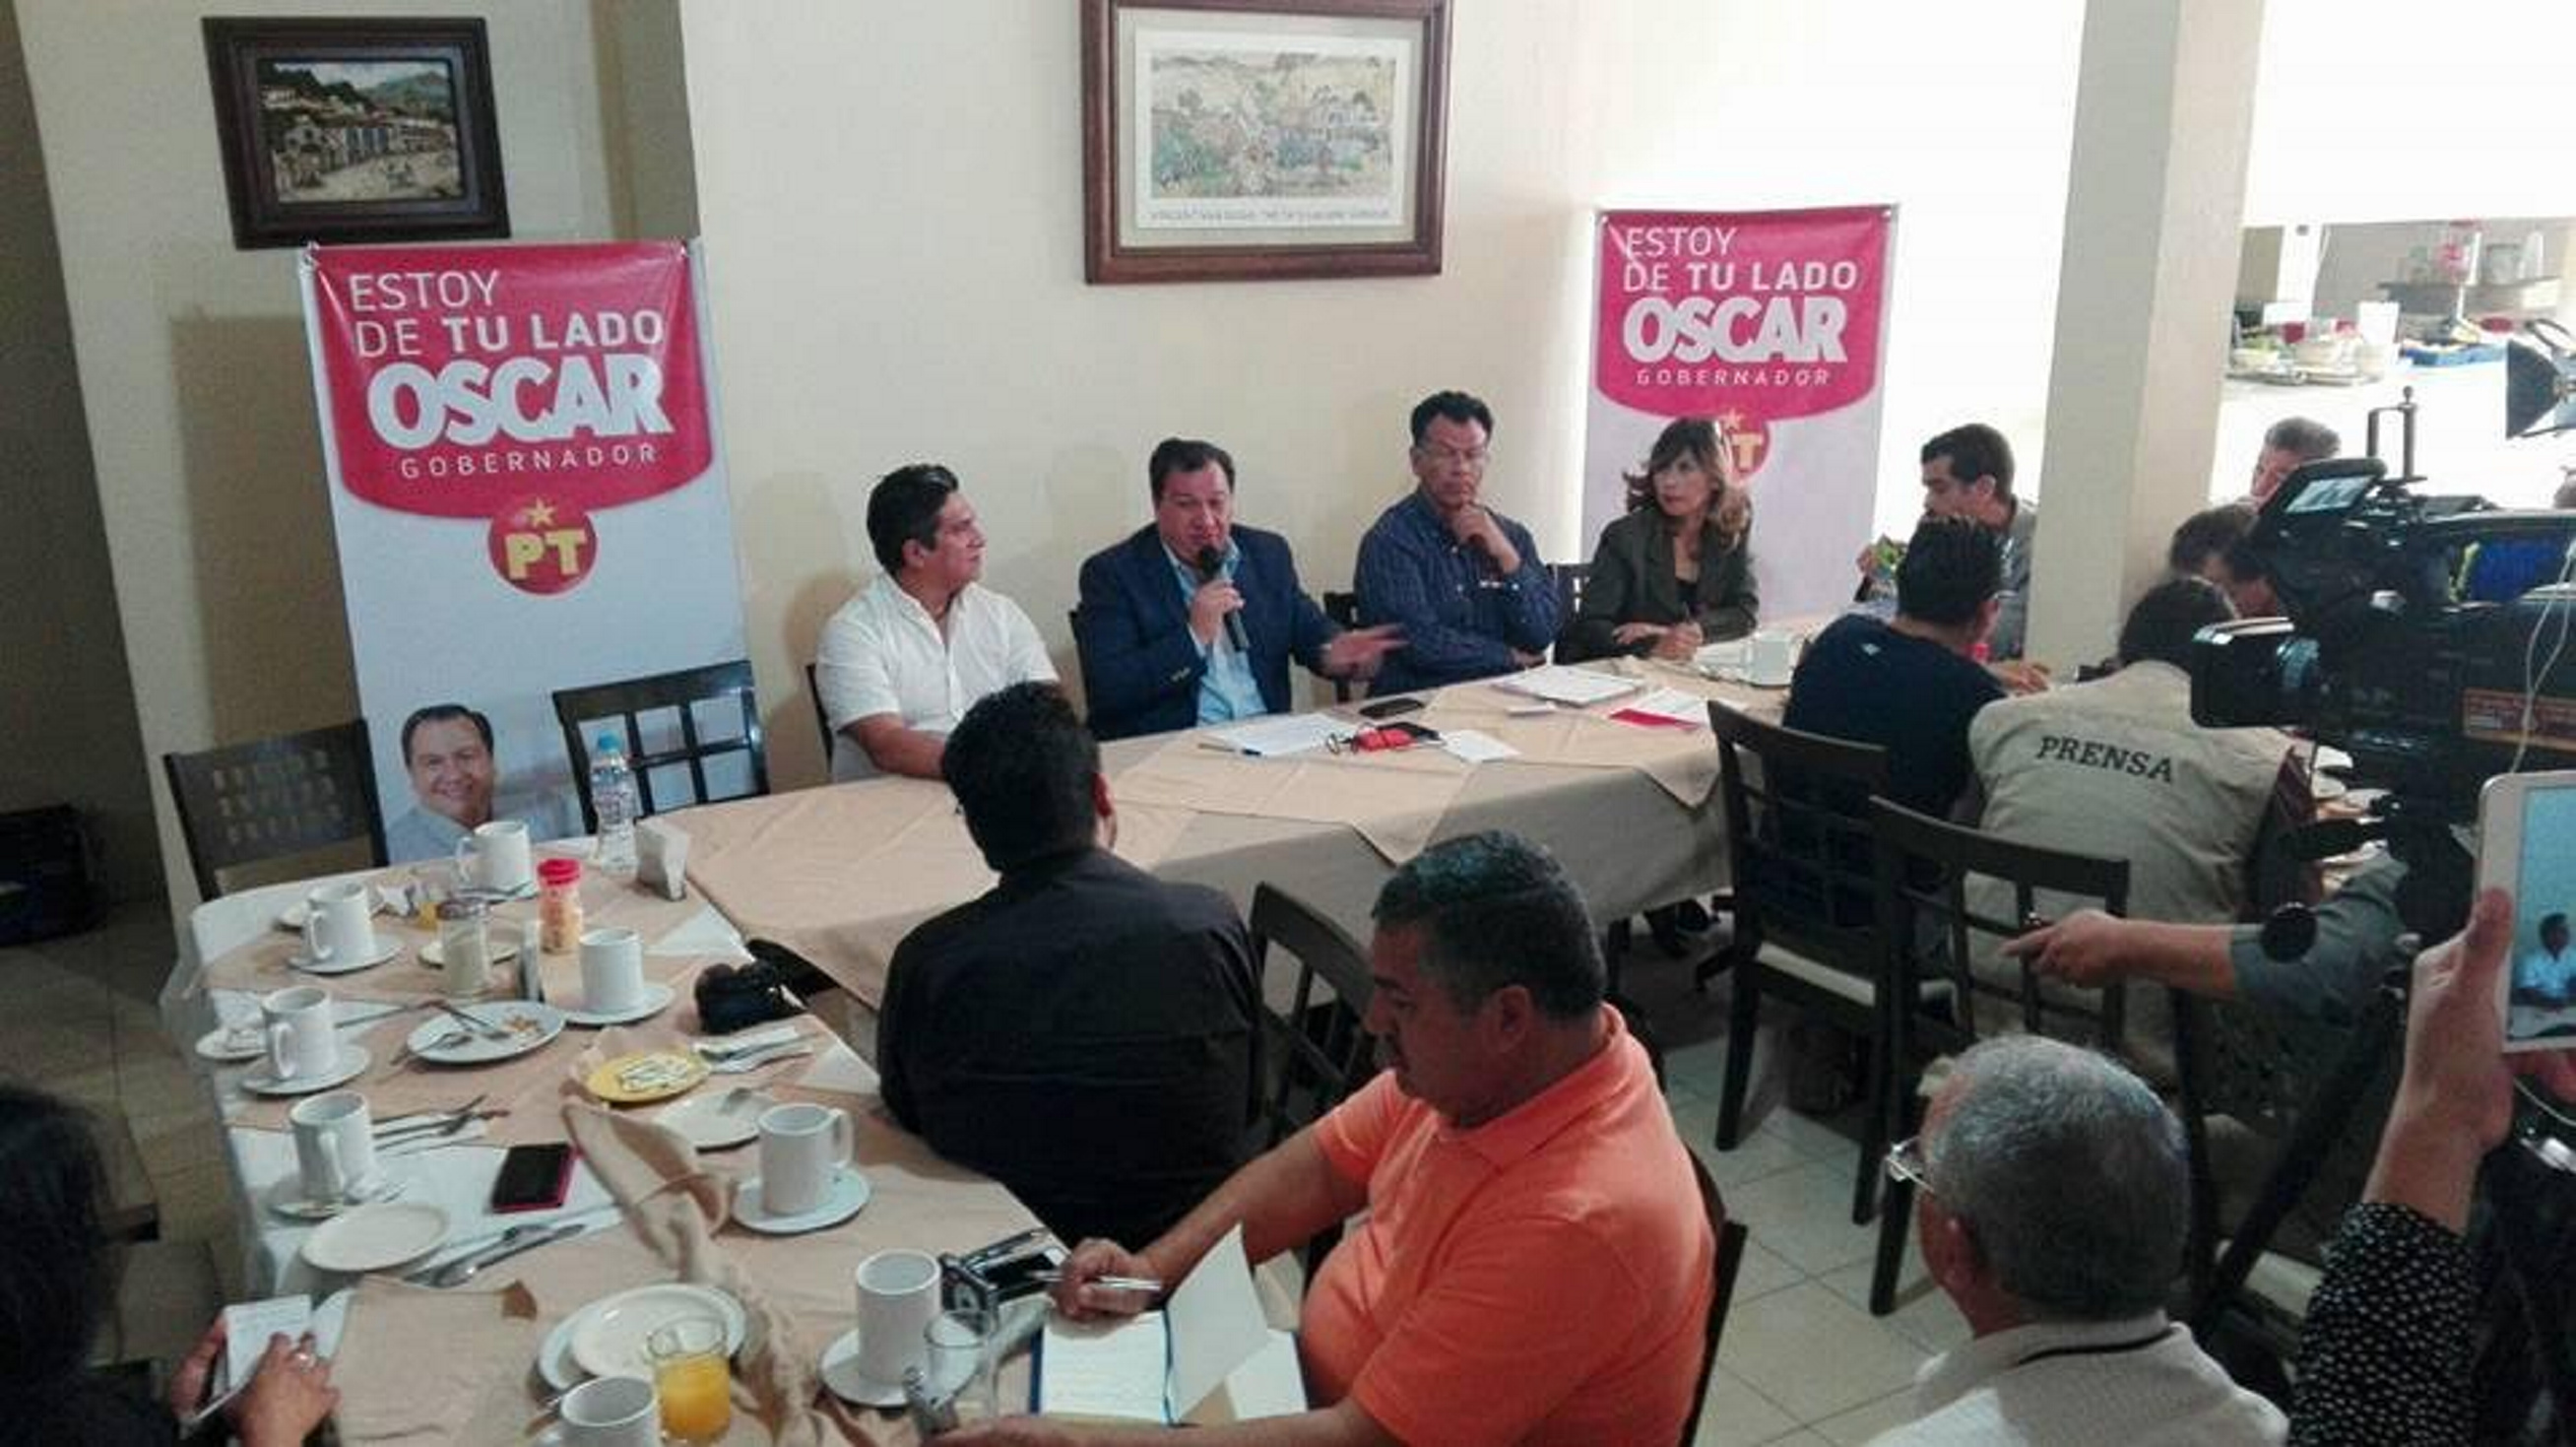 El candidato del Partido del Trabajo al gobierno del Estado de México, OÓcar González Yáñez, ofreció una conferencia de prensa en Texcoco (Notimex)